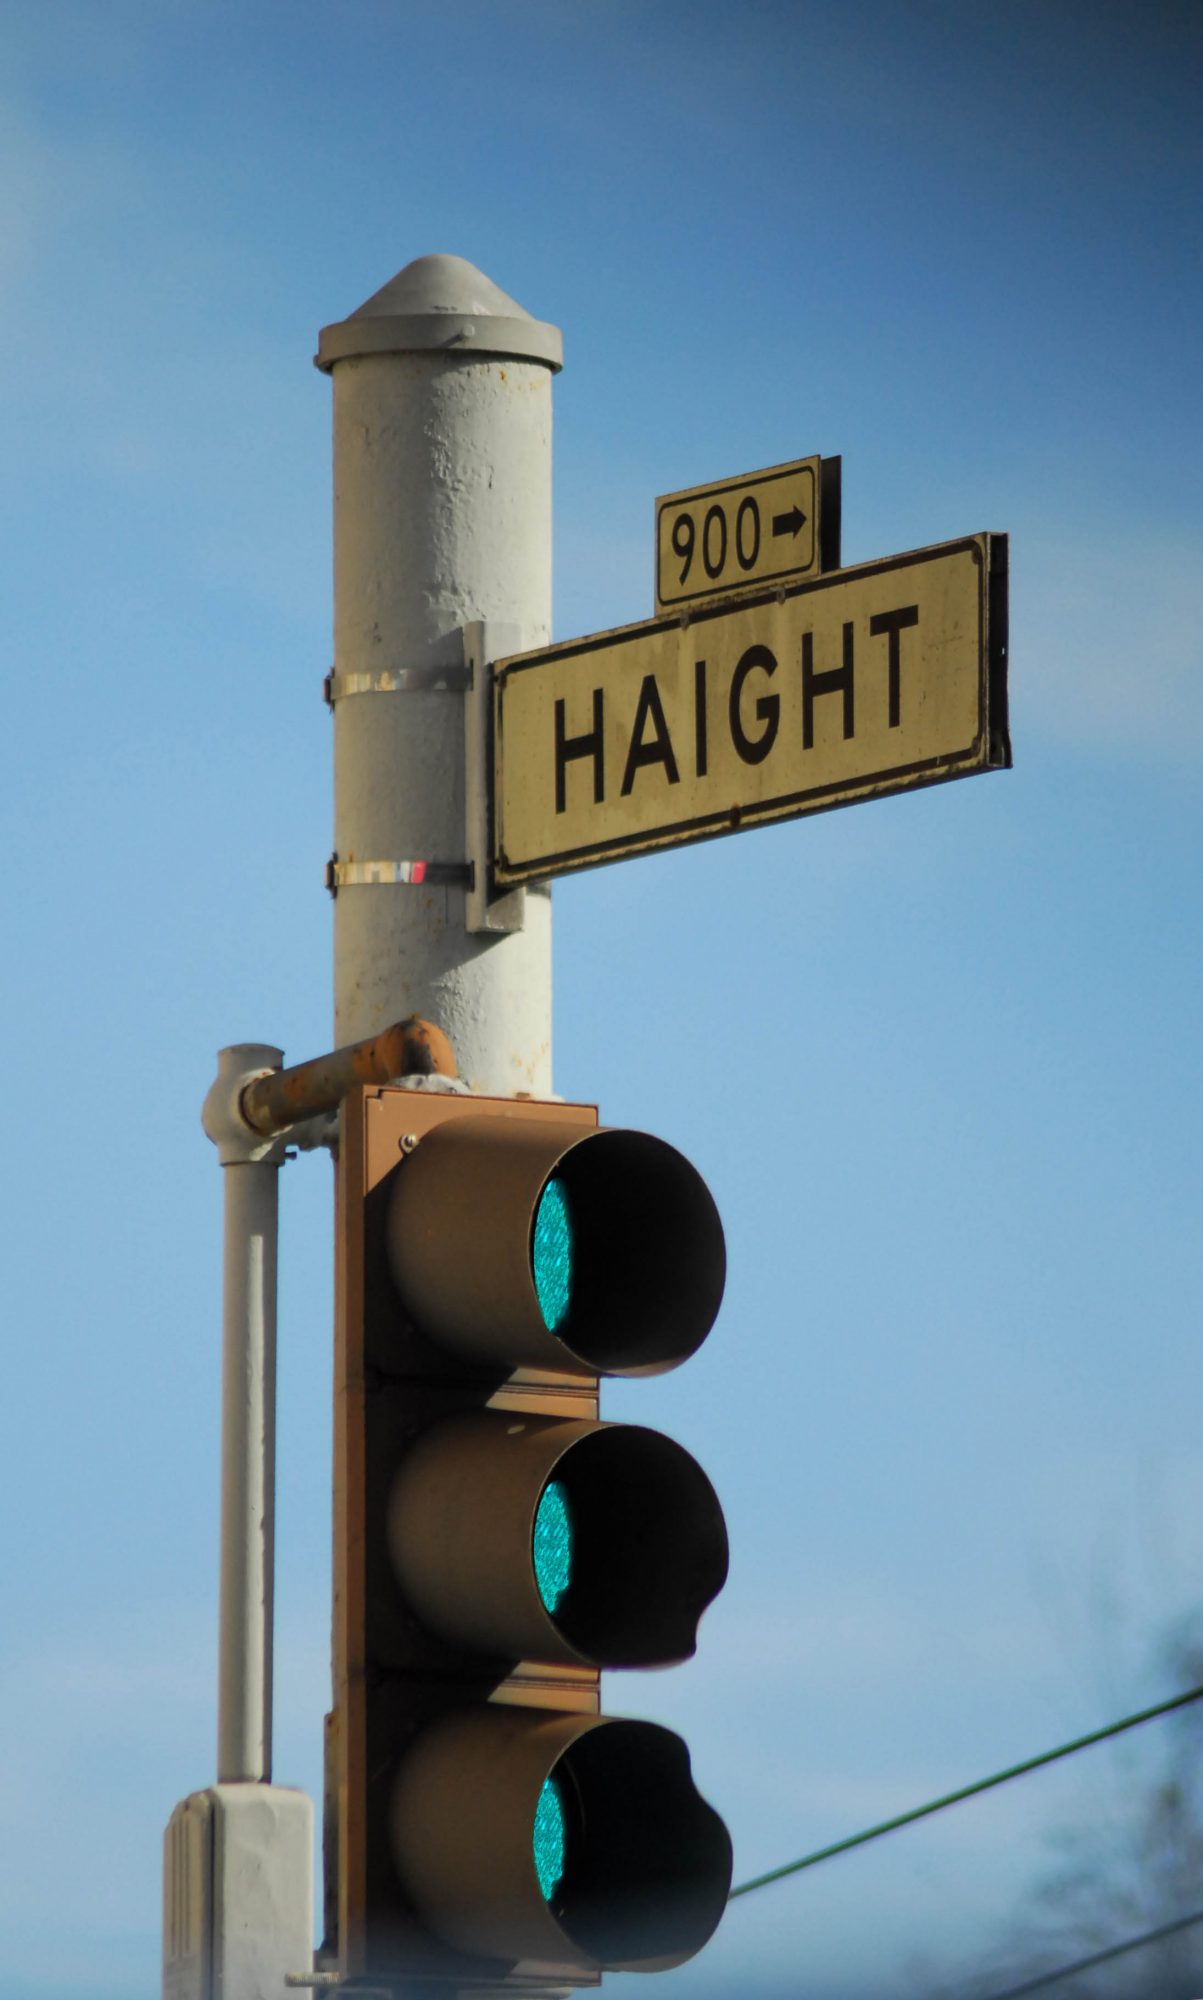 Go Haight, San Francisco, 2012